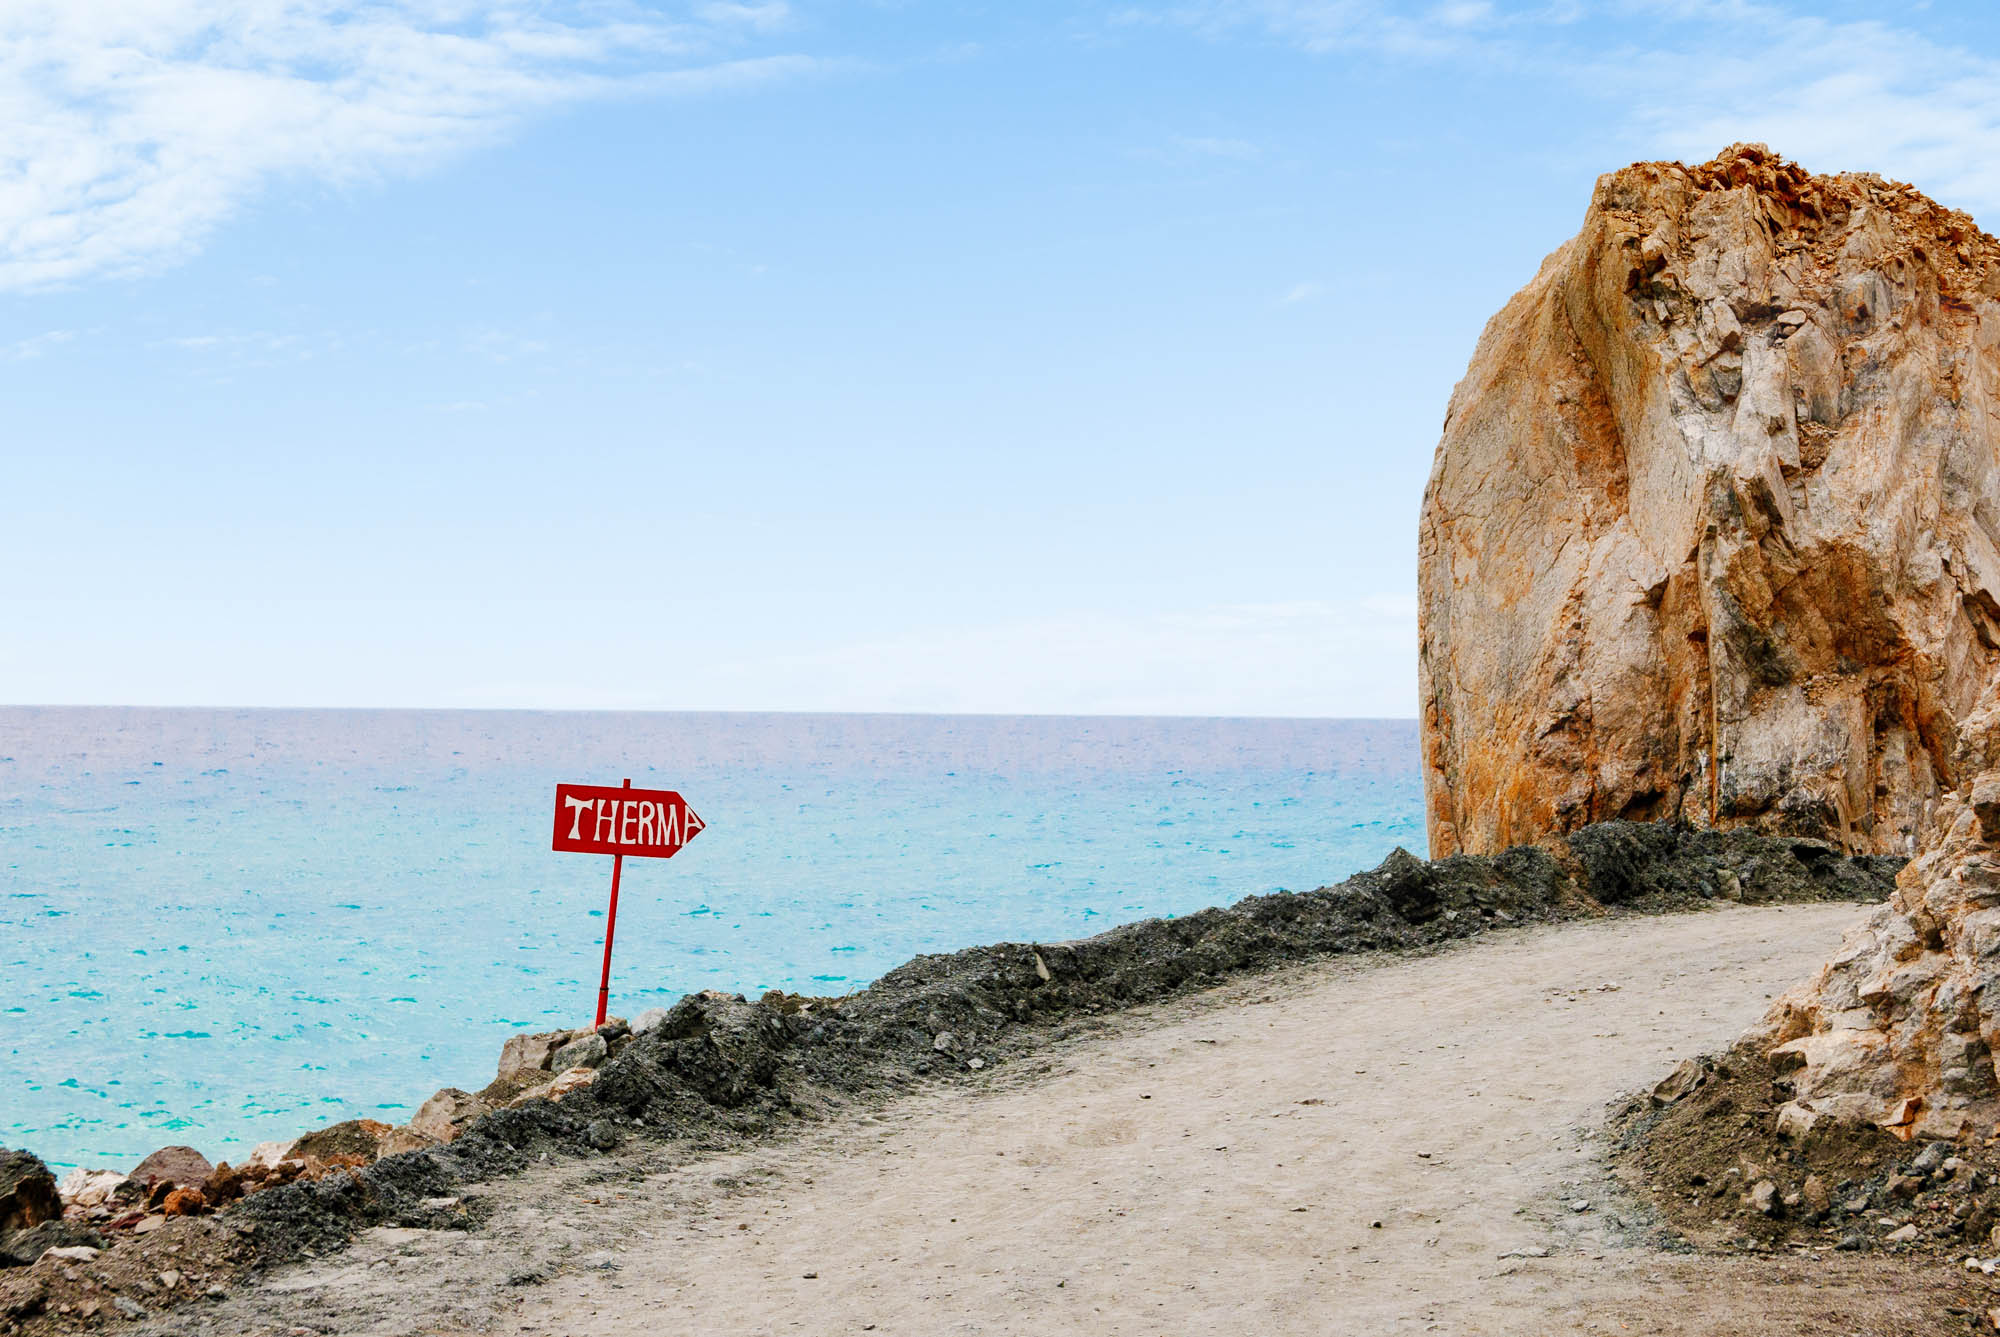 plaża, znak drogowy prowadzący na plaże piaszczystą ścieżką, niebo i skały